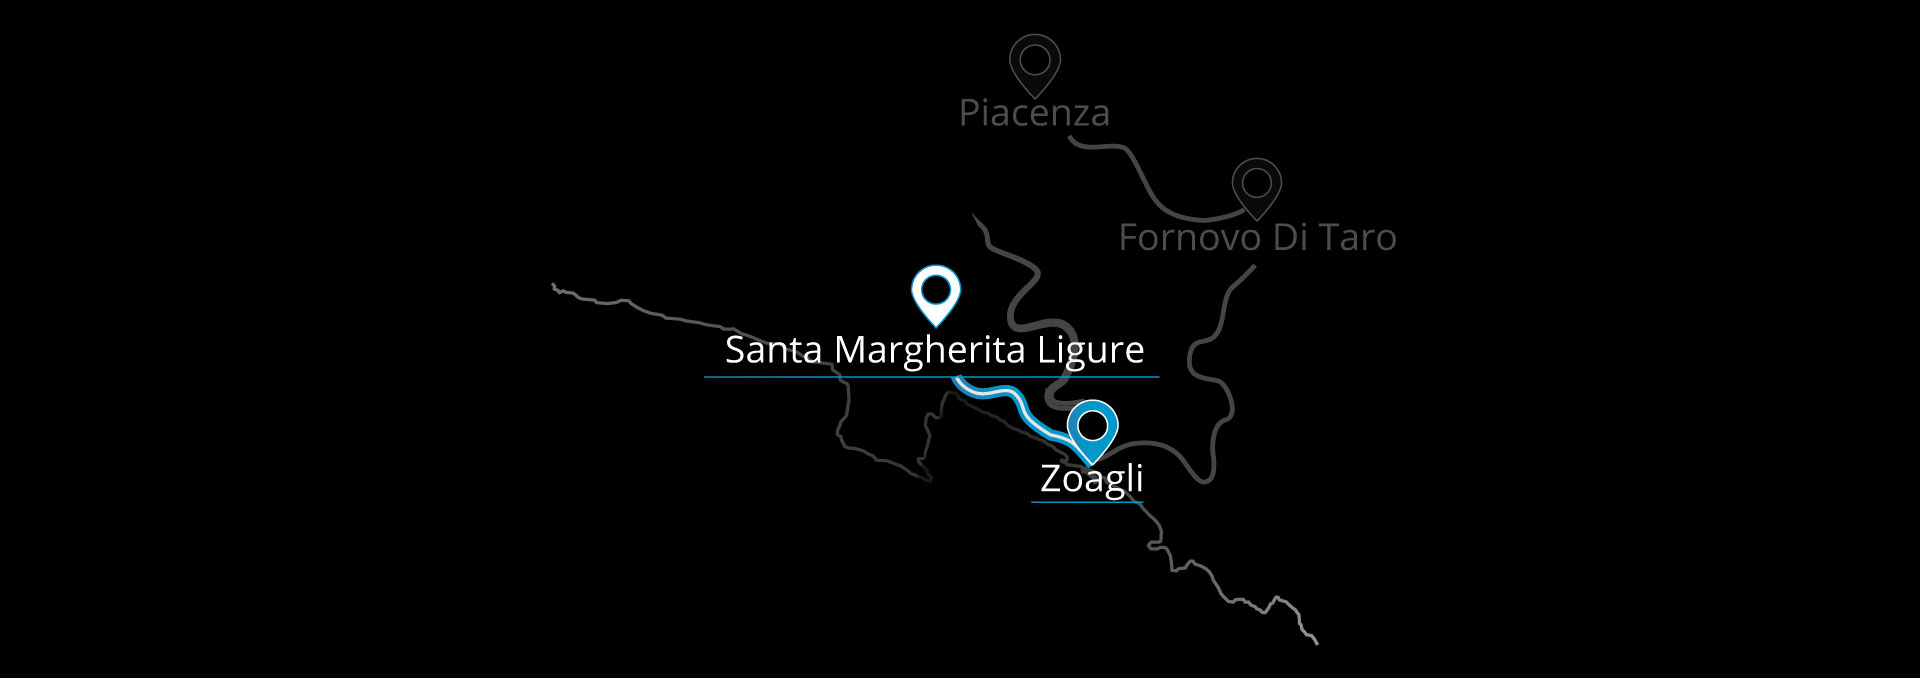 Mercedes-Benz SL 400 - Santa Margherita Ligure - Zoagli